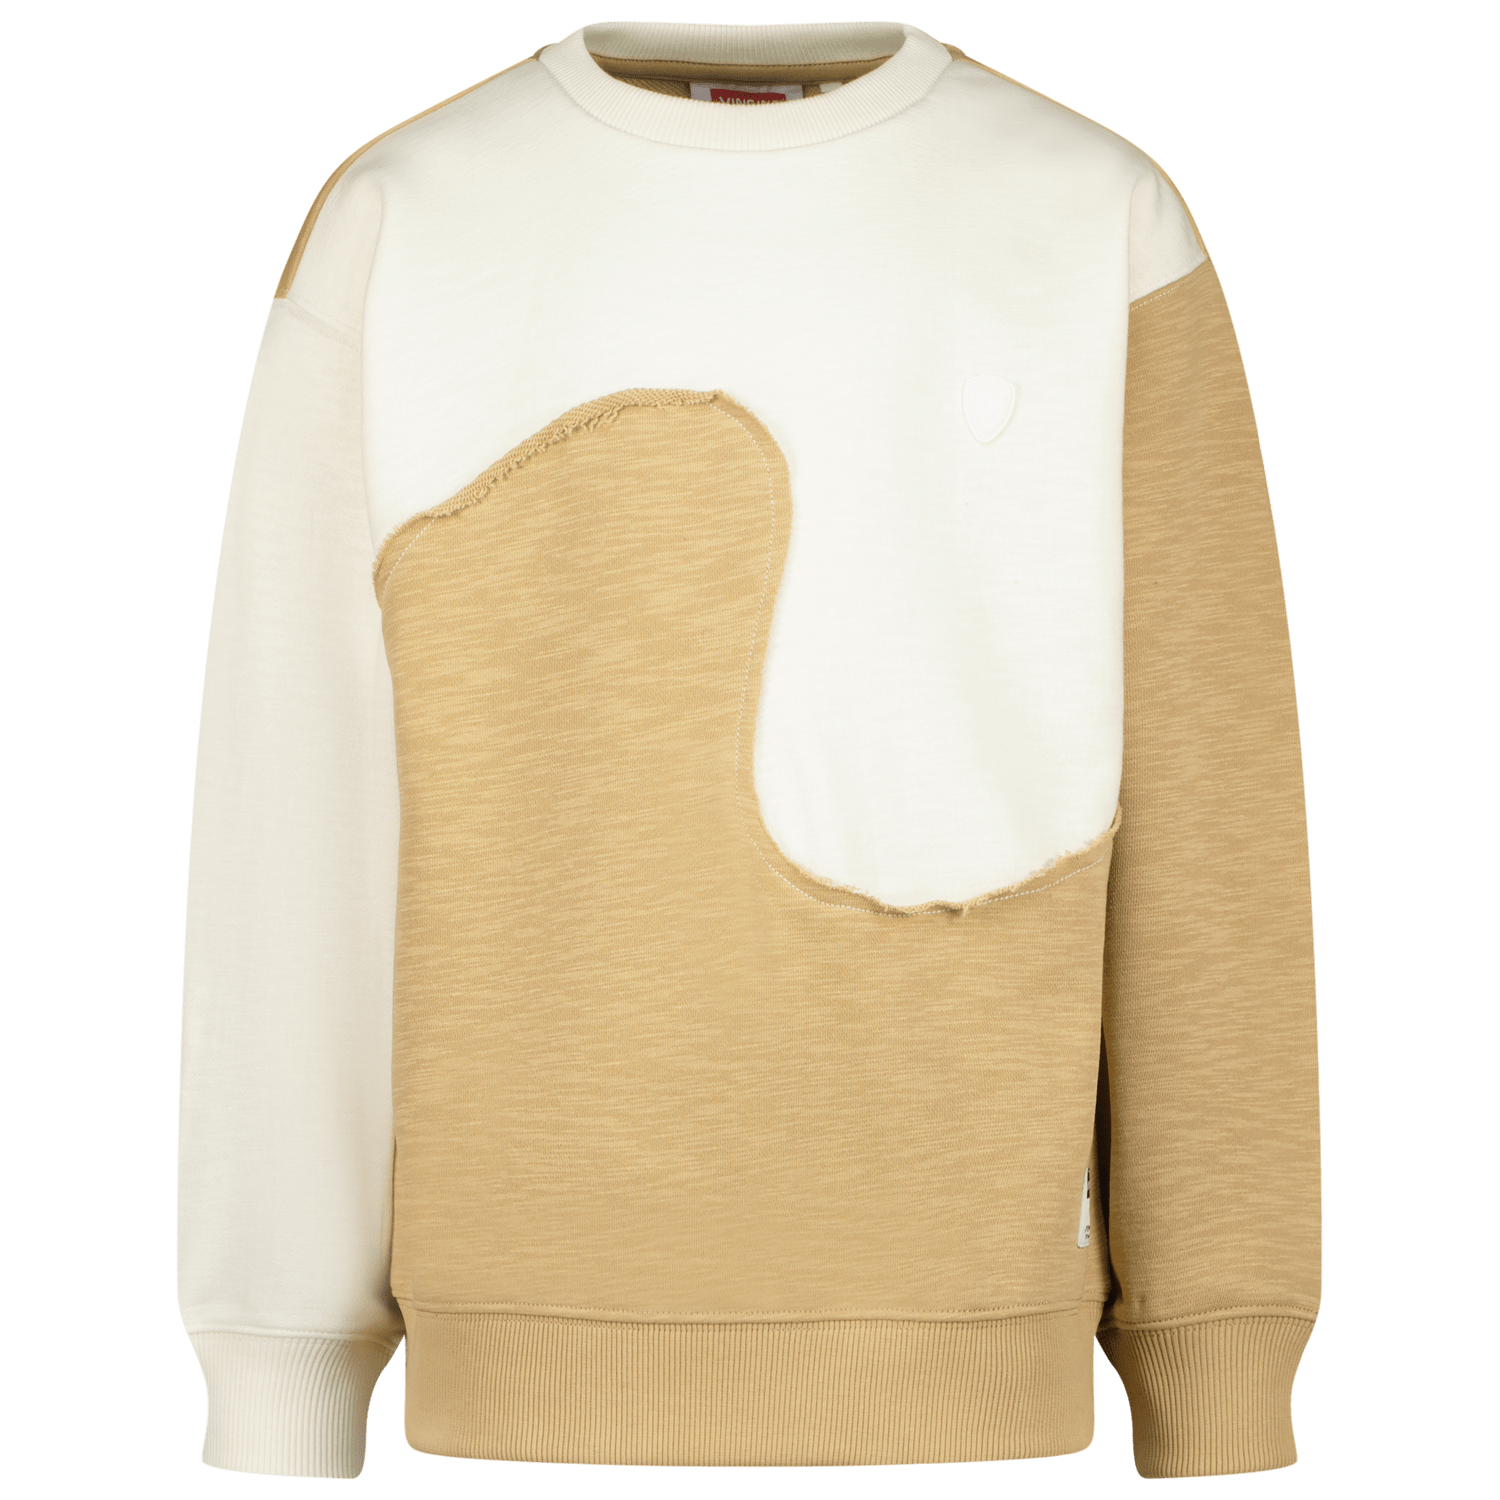 VINGINO sweater zand offwhite Beige Meerkleurig 140